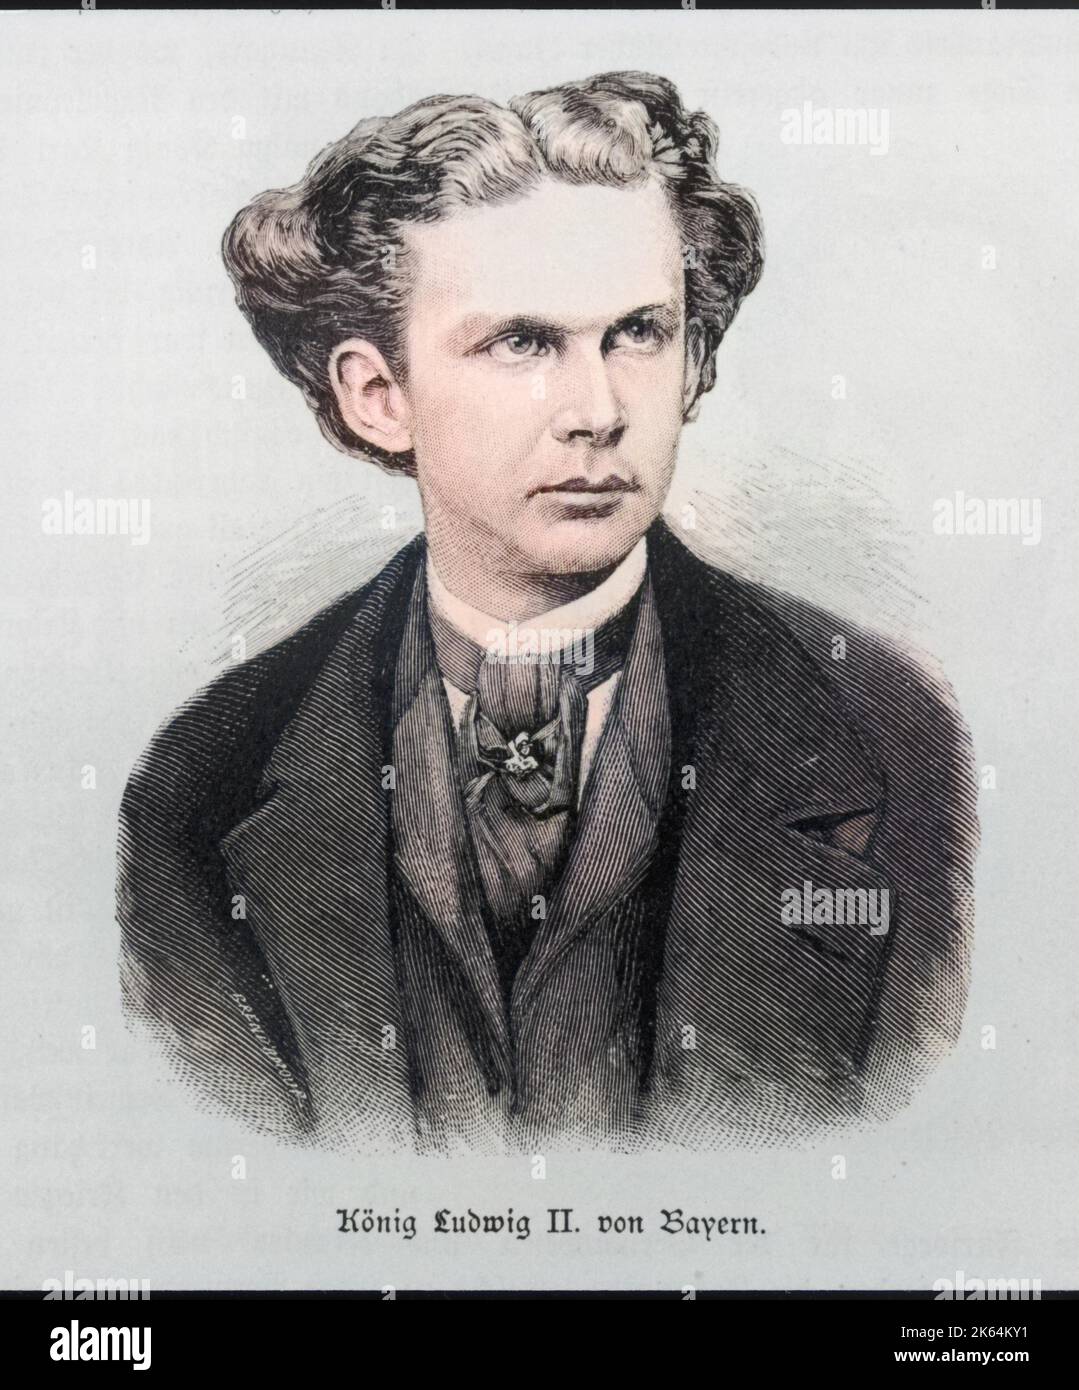 KÖNIG LUDWIG II. VON BAYERN als junger Mann - er regierte von März 1864 bis Juni 1886 Datum: 1845 - 1886 Stockfoto